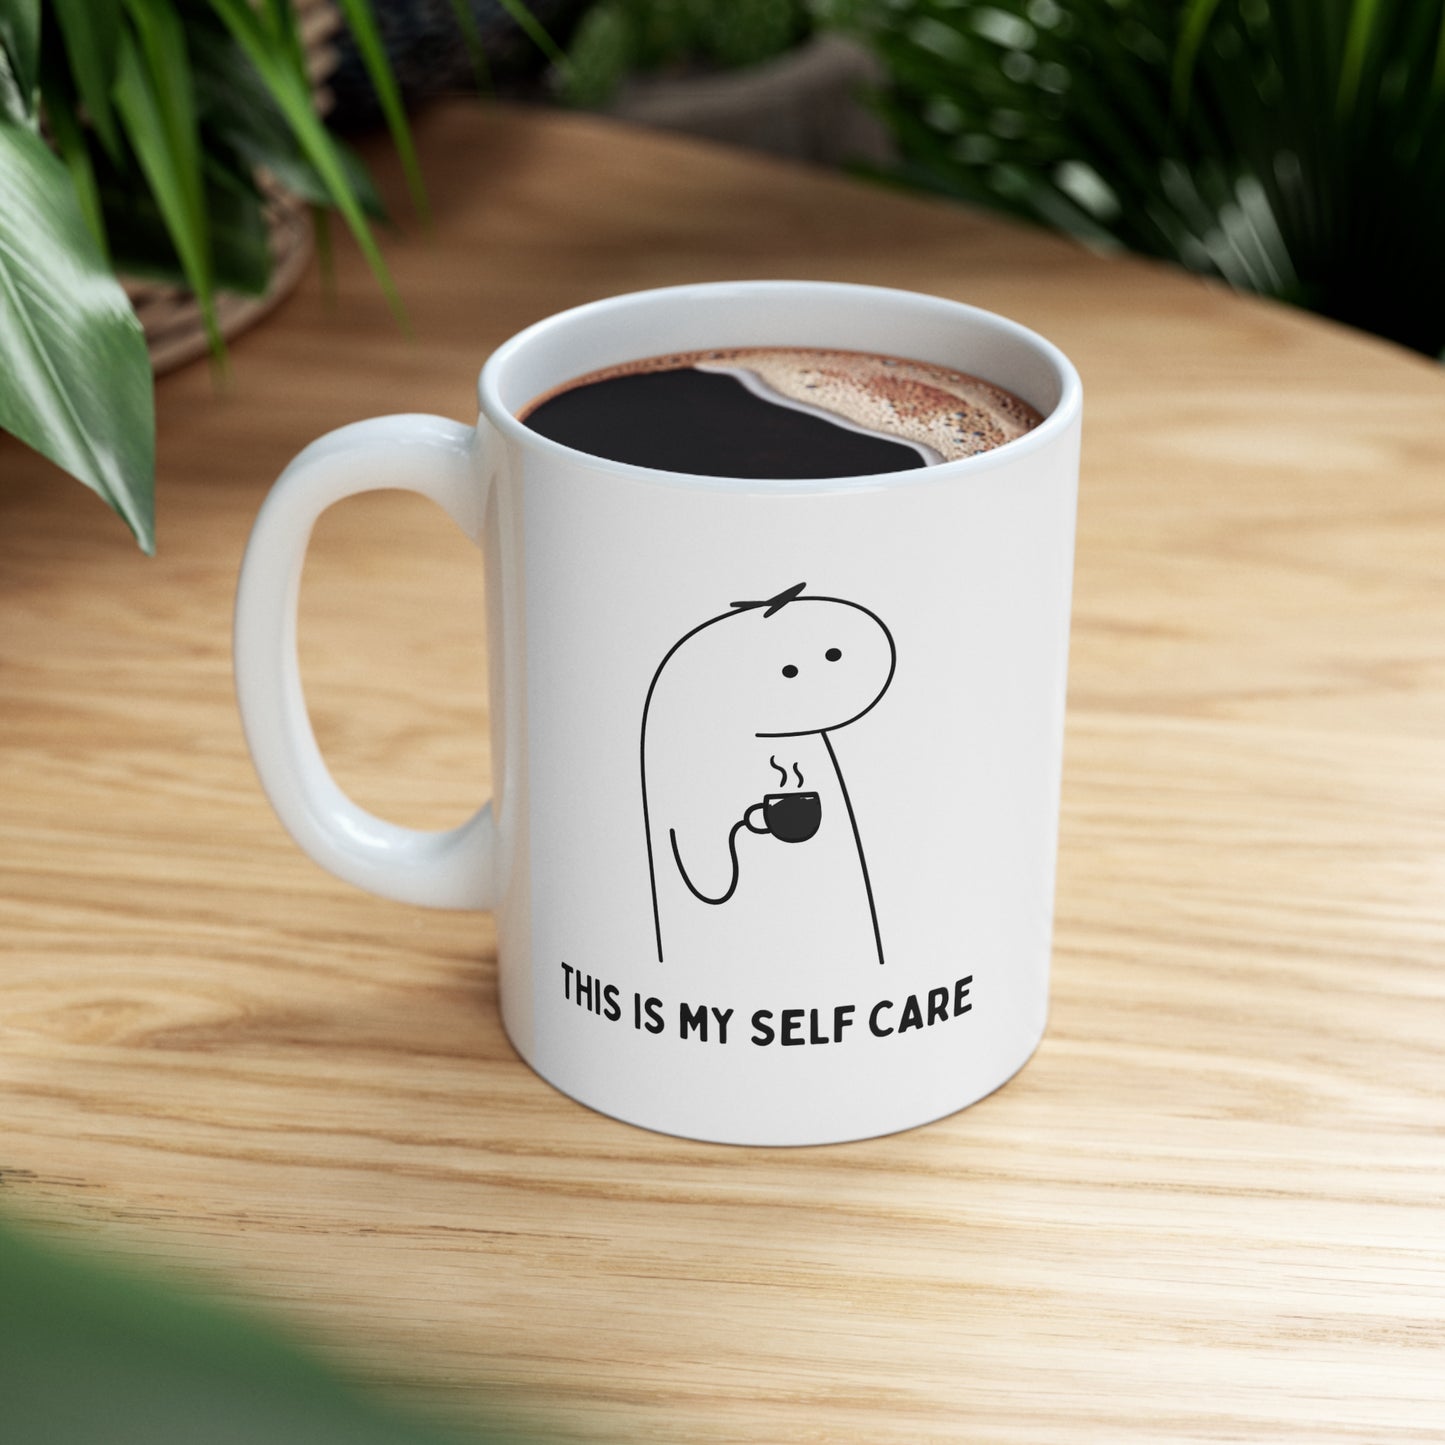 Self Care Mug